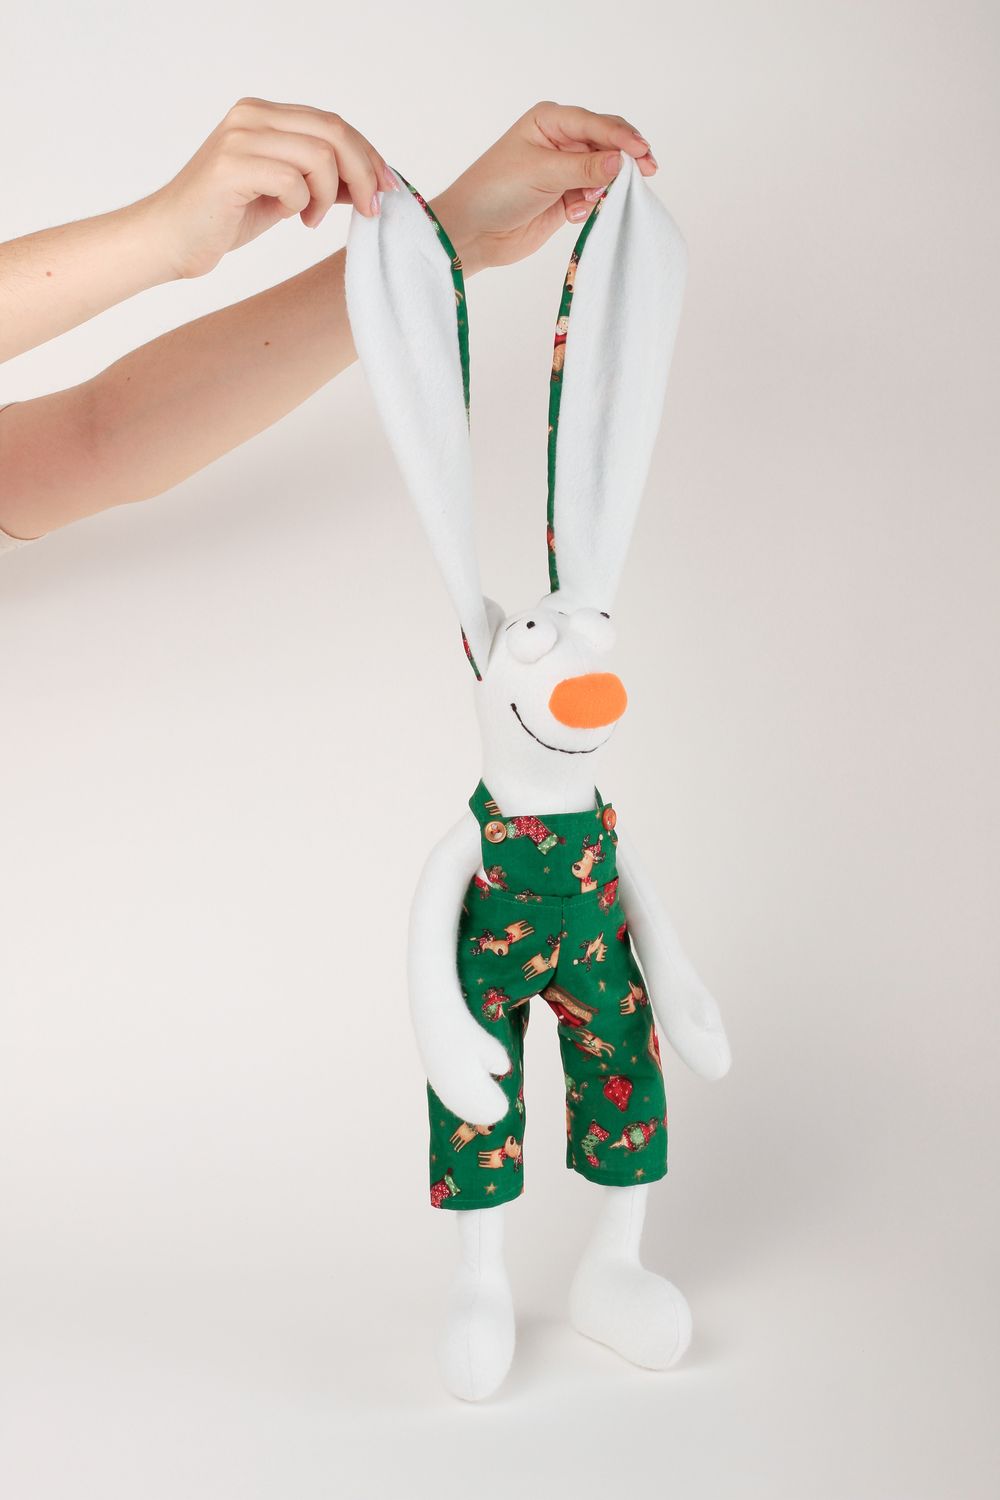 Kuscheltier Hase handgefertigt Kinder Spielsache originelles Geschenk weich foto 4